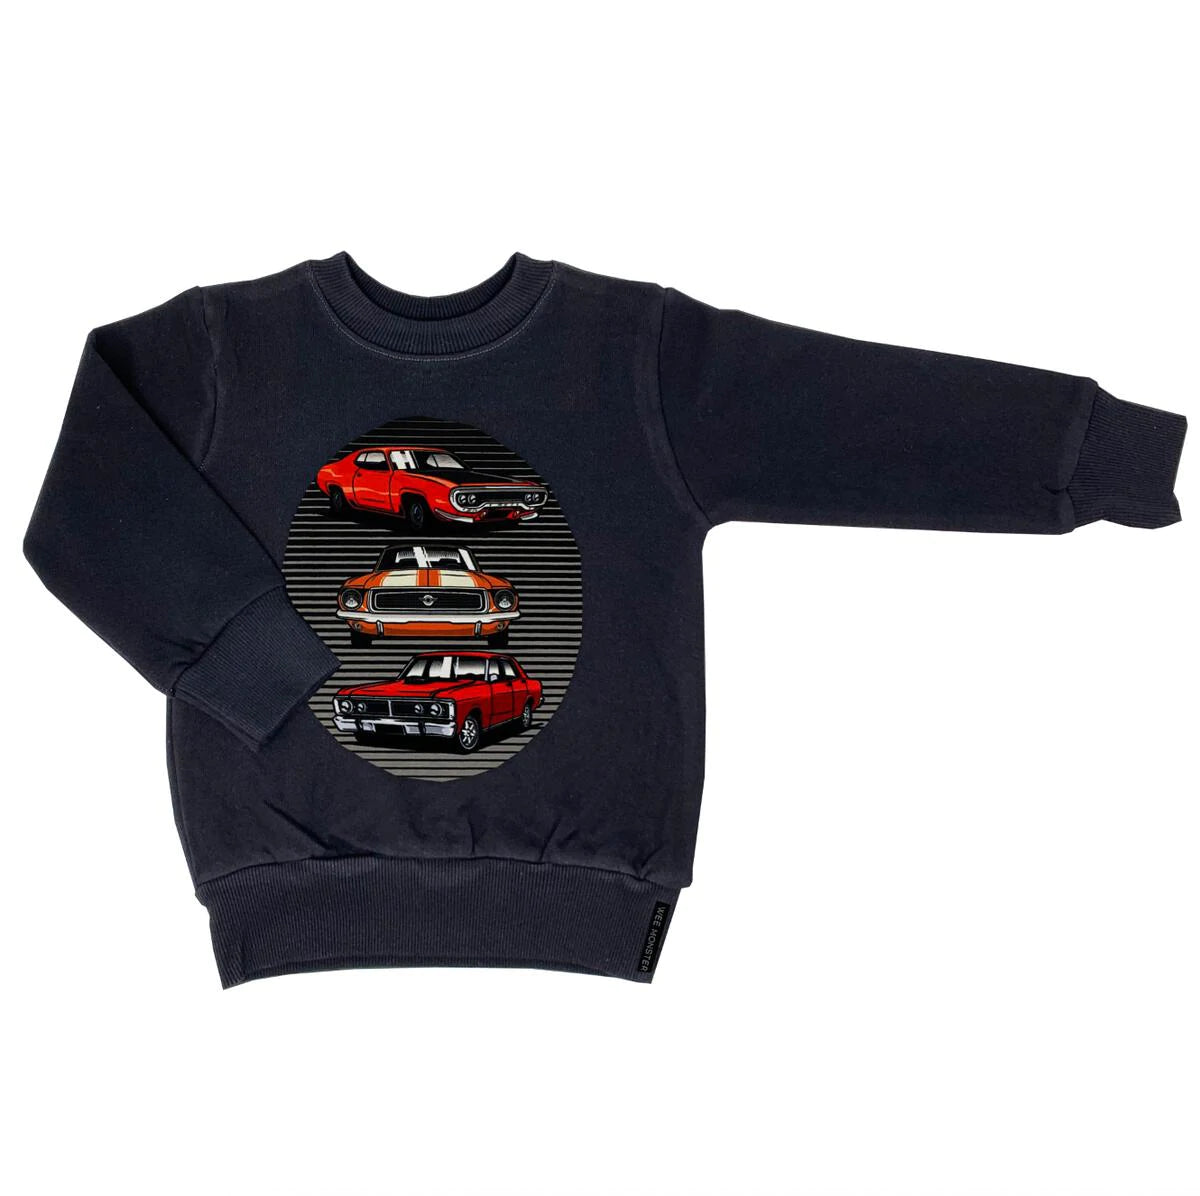 Cars Super Duper Black Sweatshirt